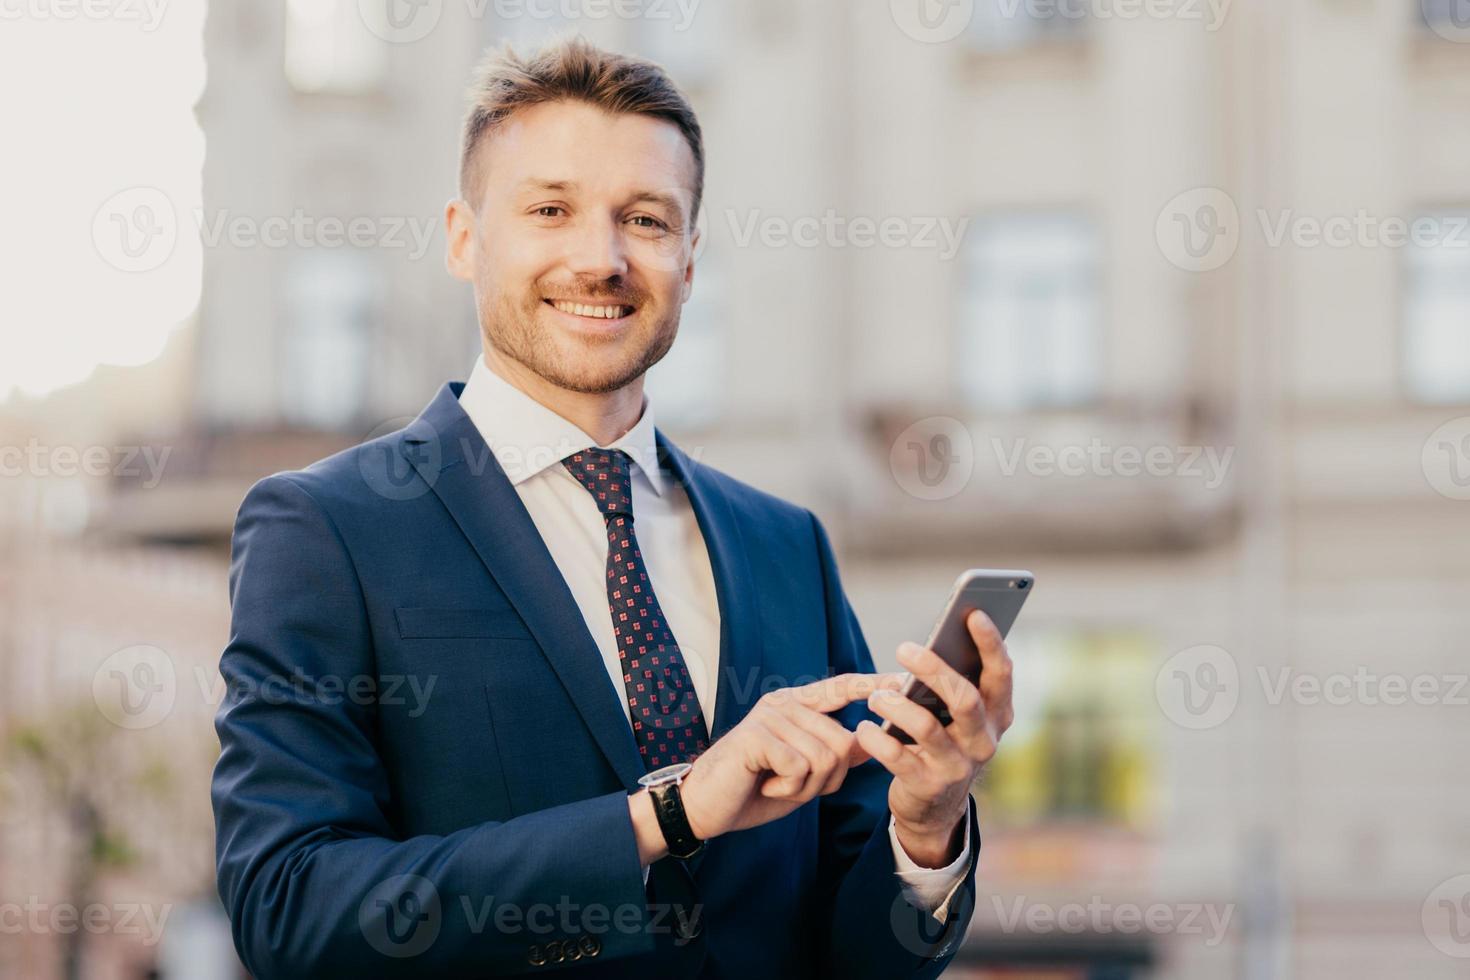 un homme d'affaires satisfait tient un smartphone, lit les e-mails de l'investisseur, heureux de recevoir de bonnes nouvelles sur l'entreprise, se tient en territoire urbain, porte un costume noir et une cravate élégante. notion de technologie photo